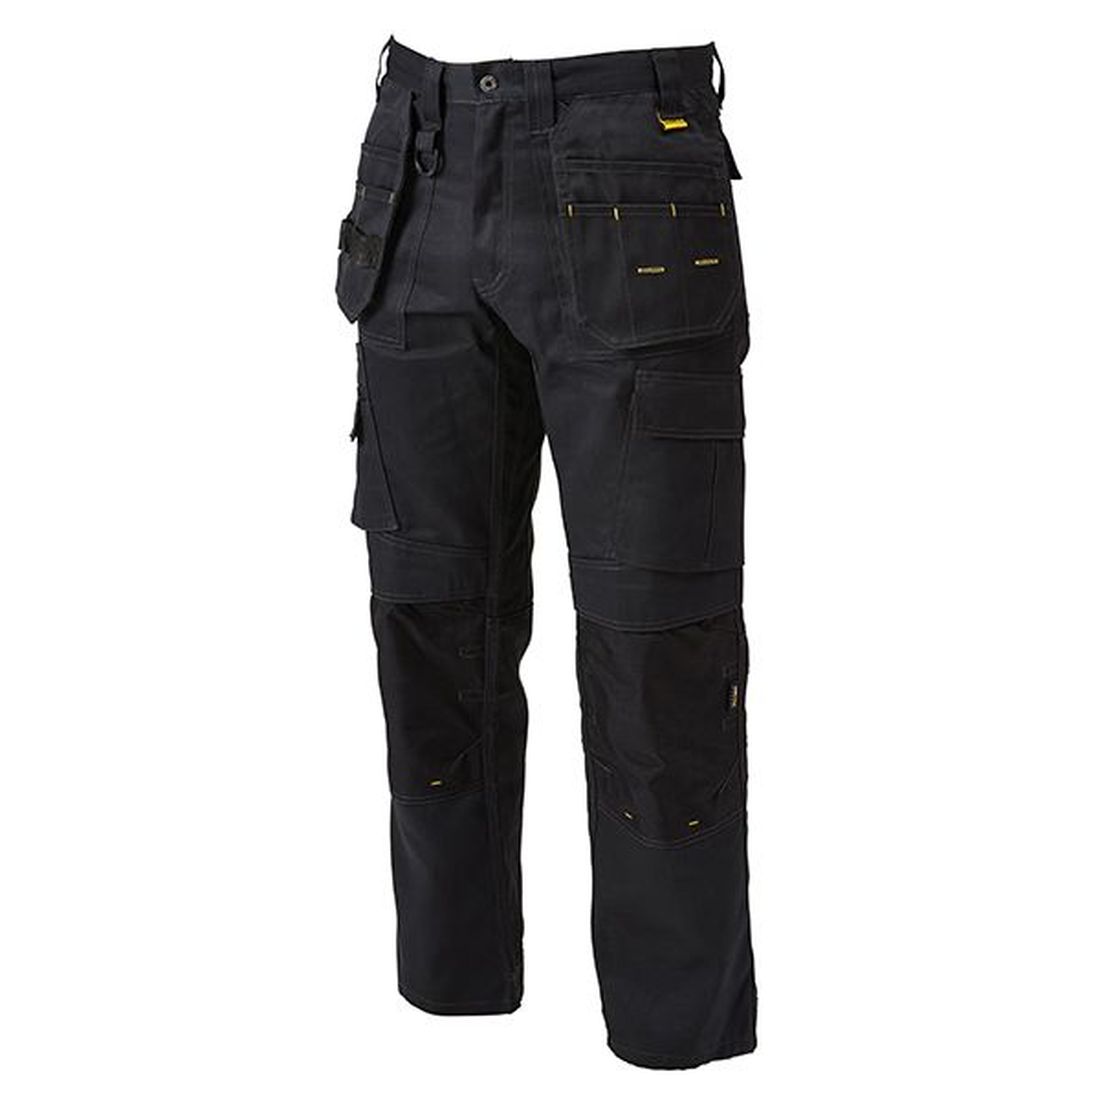 DEWALT Pro Tradesman Black Trousers Waist 38in Leg 33in                                